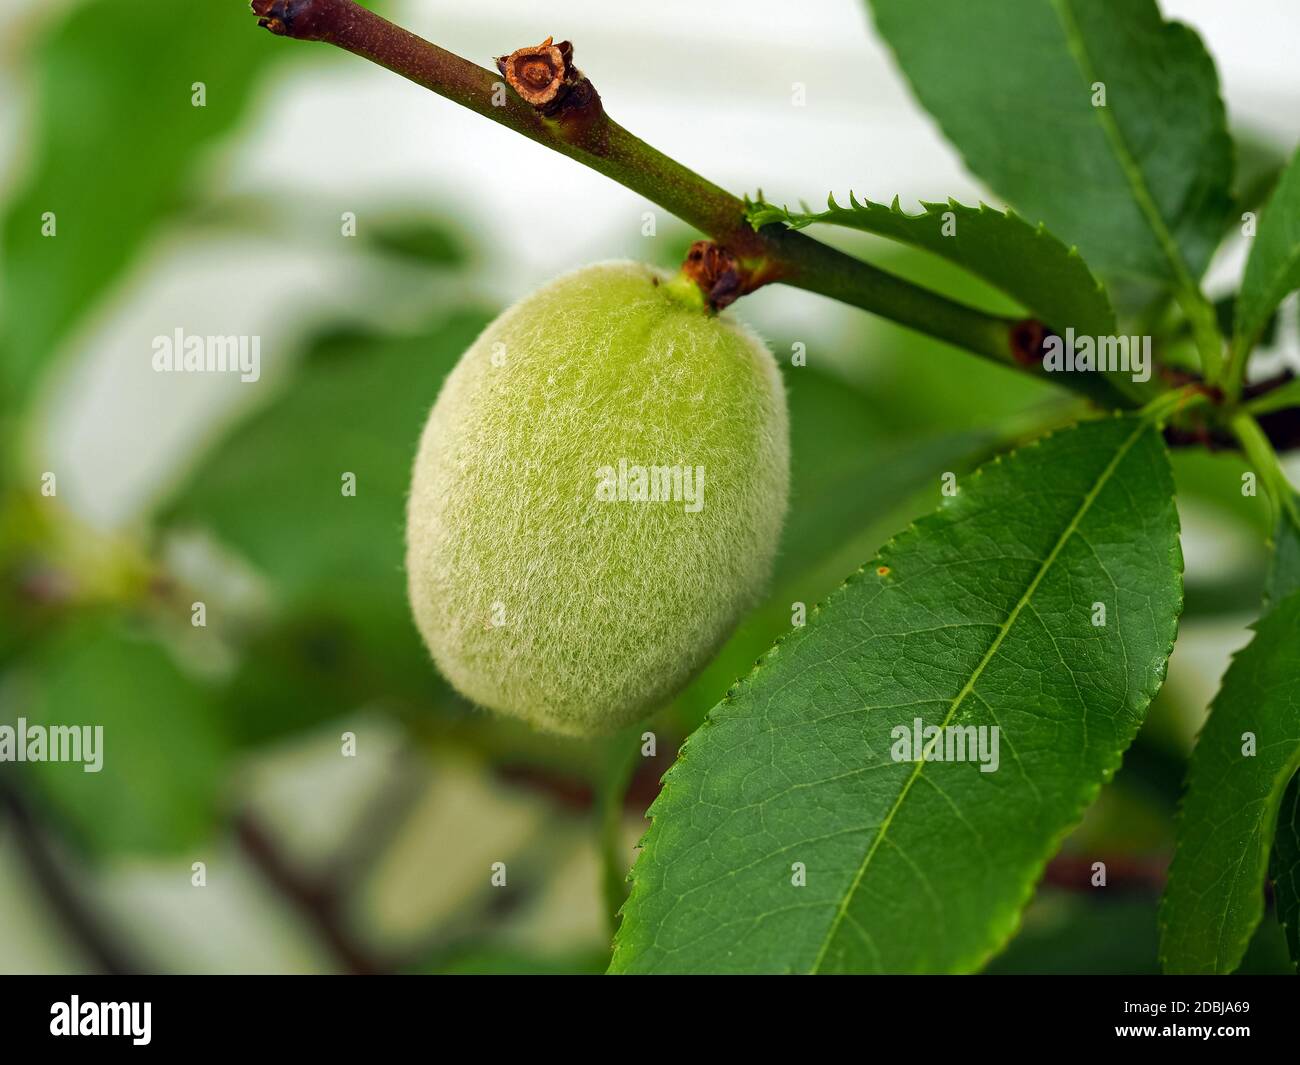 Nahaufnahme einer grünen Pfirsichfrucht, Prunus persica, die sich auf einem Ast entwickelt Stockfoto